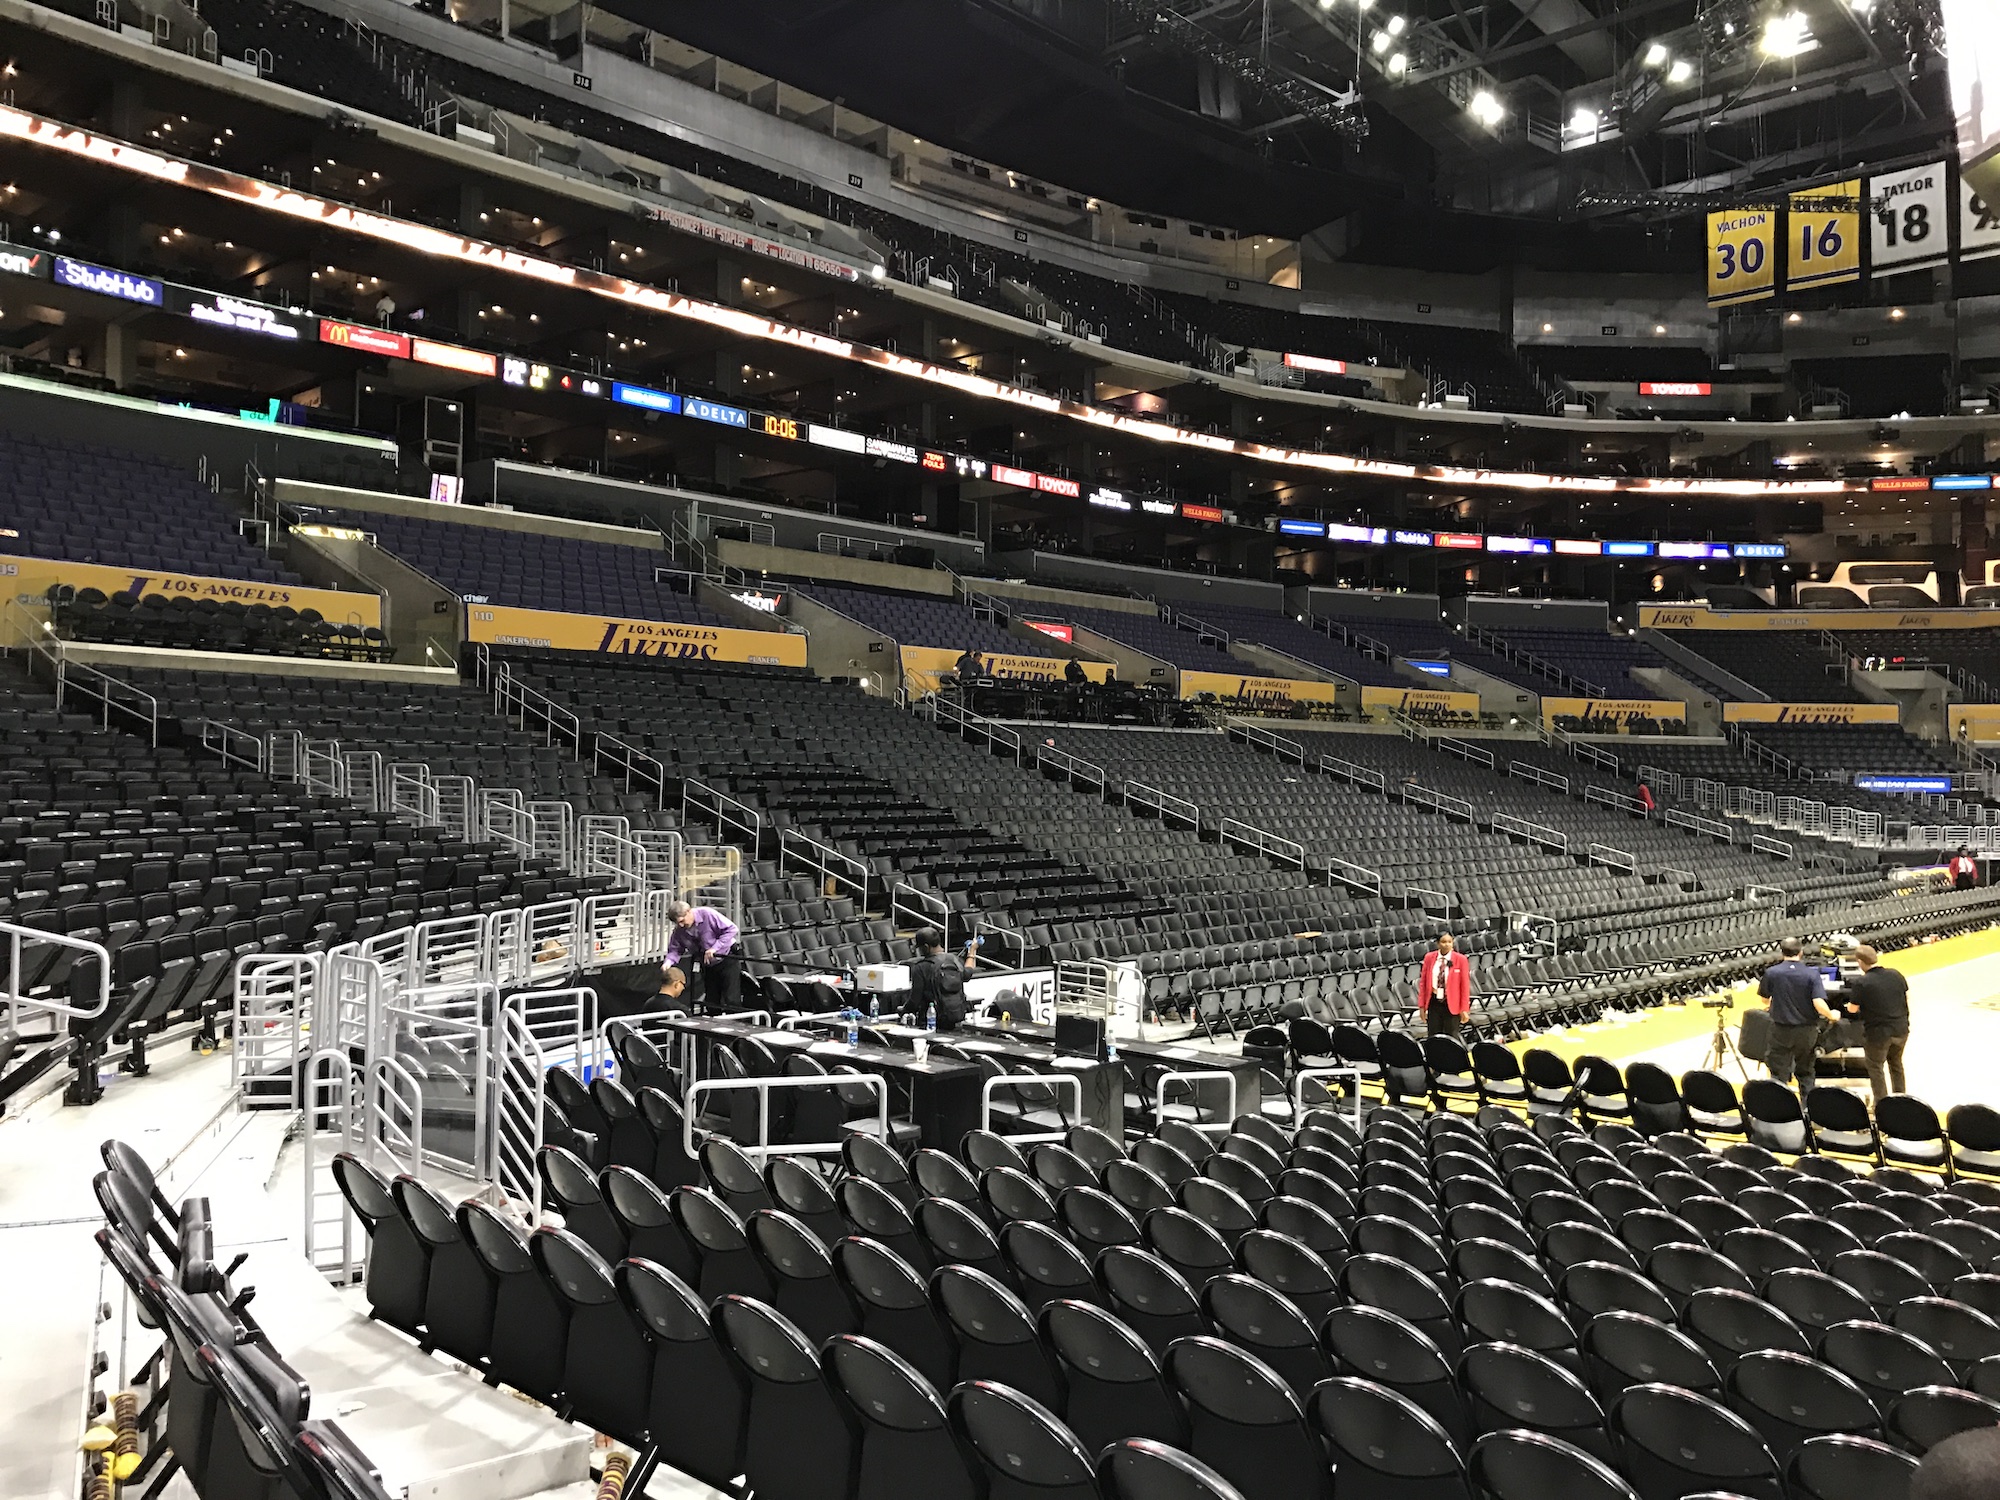 Staples Center empty inside